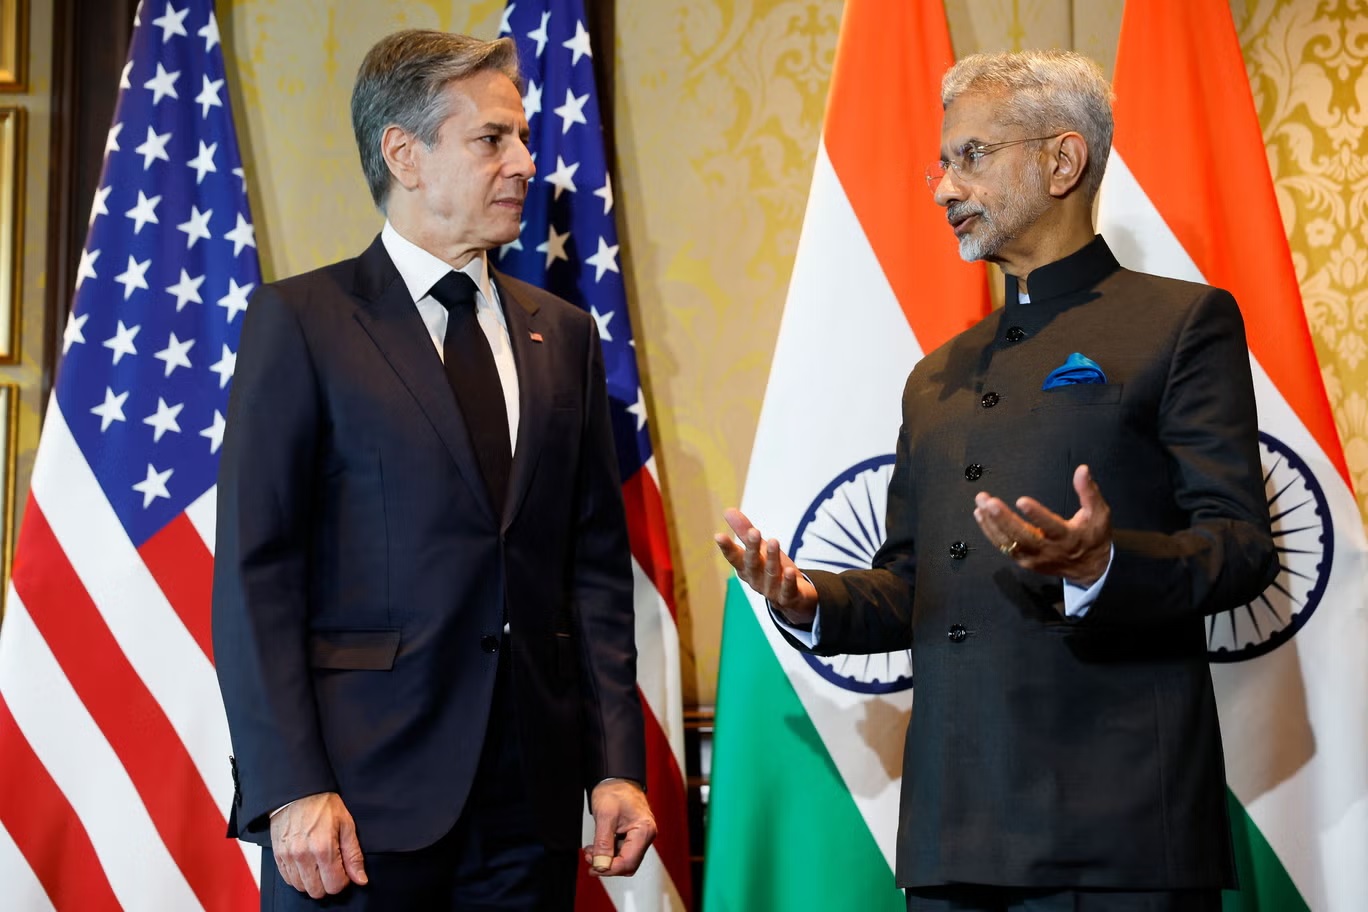 وزير الخارجية الأميركي أنتوني بلينكن (يسار) يلتقي بوزير الشؤون الخارجية الهندي س. جايشانكار، قبل الحوار الوزاري بين الهند والولايات المتحدة "2+2" (أ ف ب عبر غيتي)